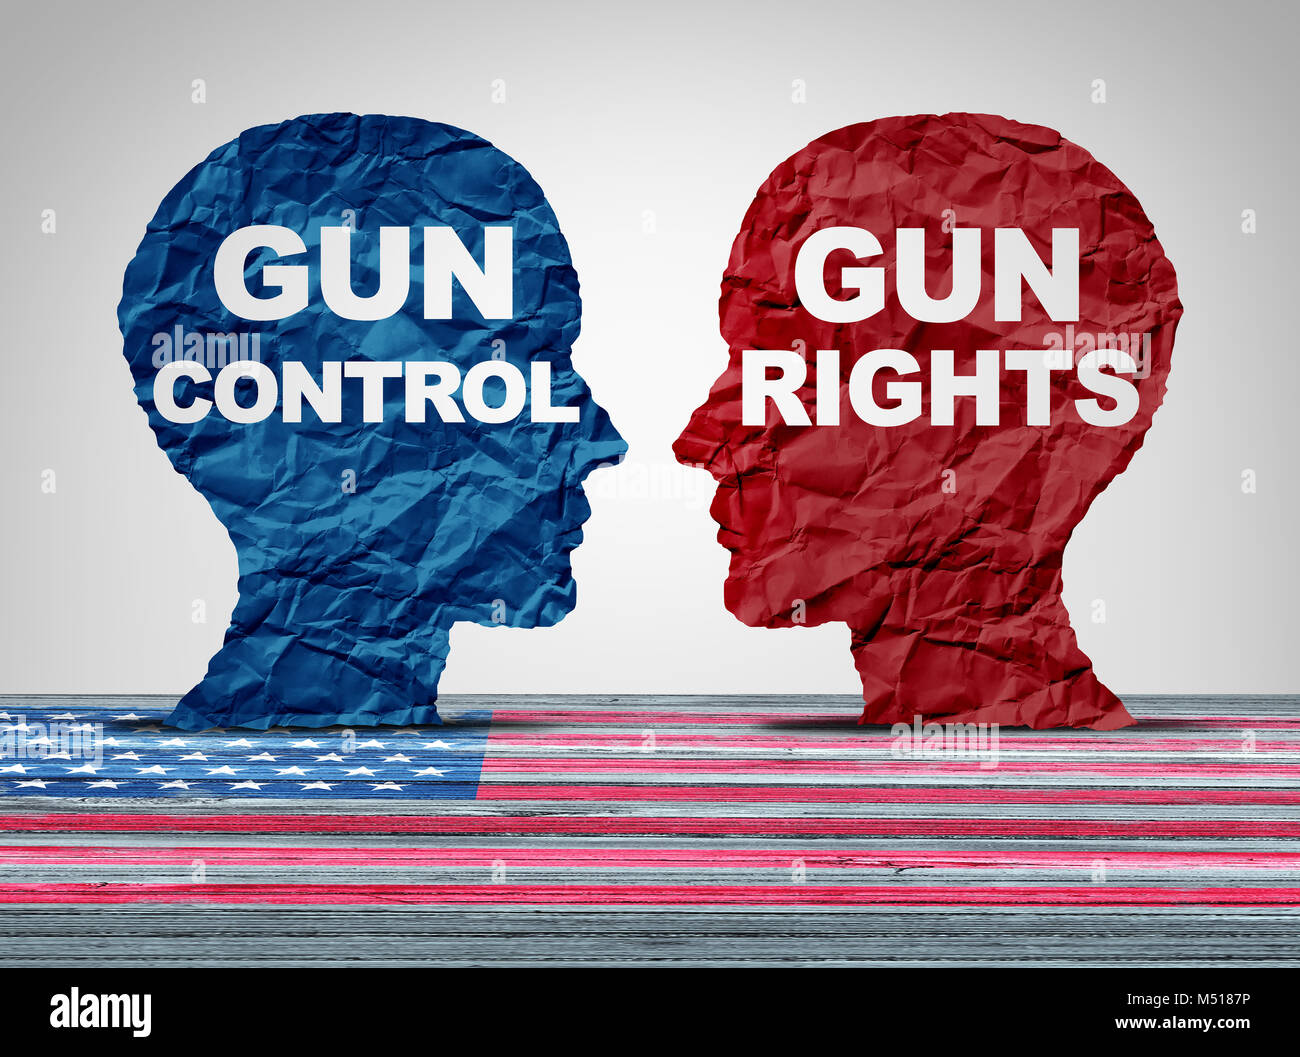 Débat des armes à feu comme le droit de contrôler les armes à feu contre des lois constitutionnelles les droits des propriétaires d'armes à feu comme un concept politique argument américain. Banque D'Images